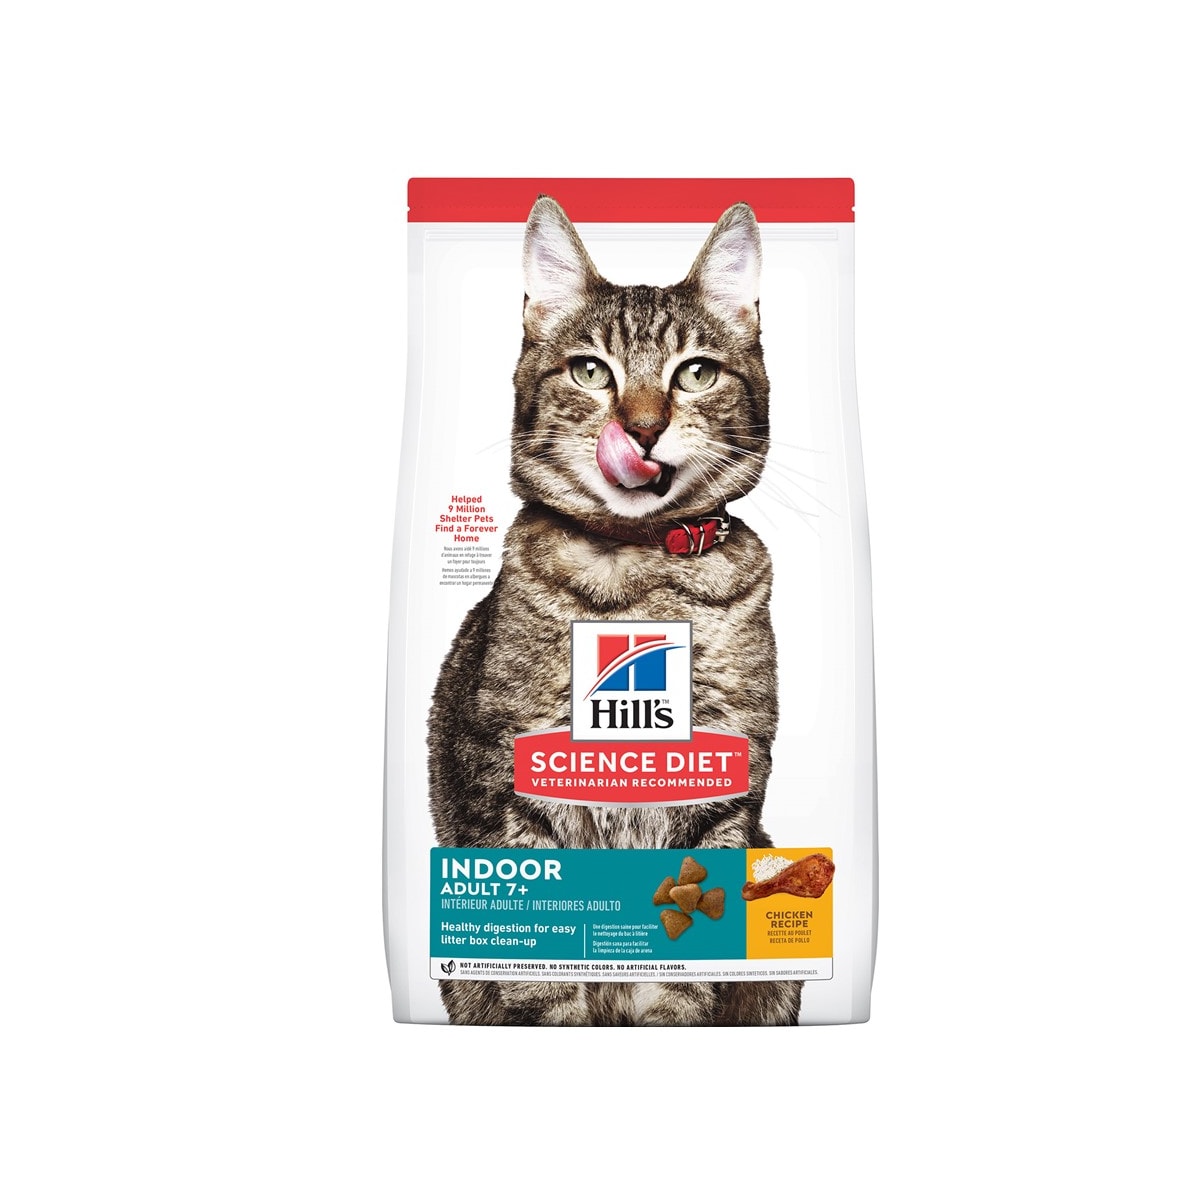 Hill's ฮิลส์ อาหารเม็ด สำหรับแมวโตเลี้ยงในบ้านอายุ 7 ปีขึ้นไป 1.58 kg_1